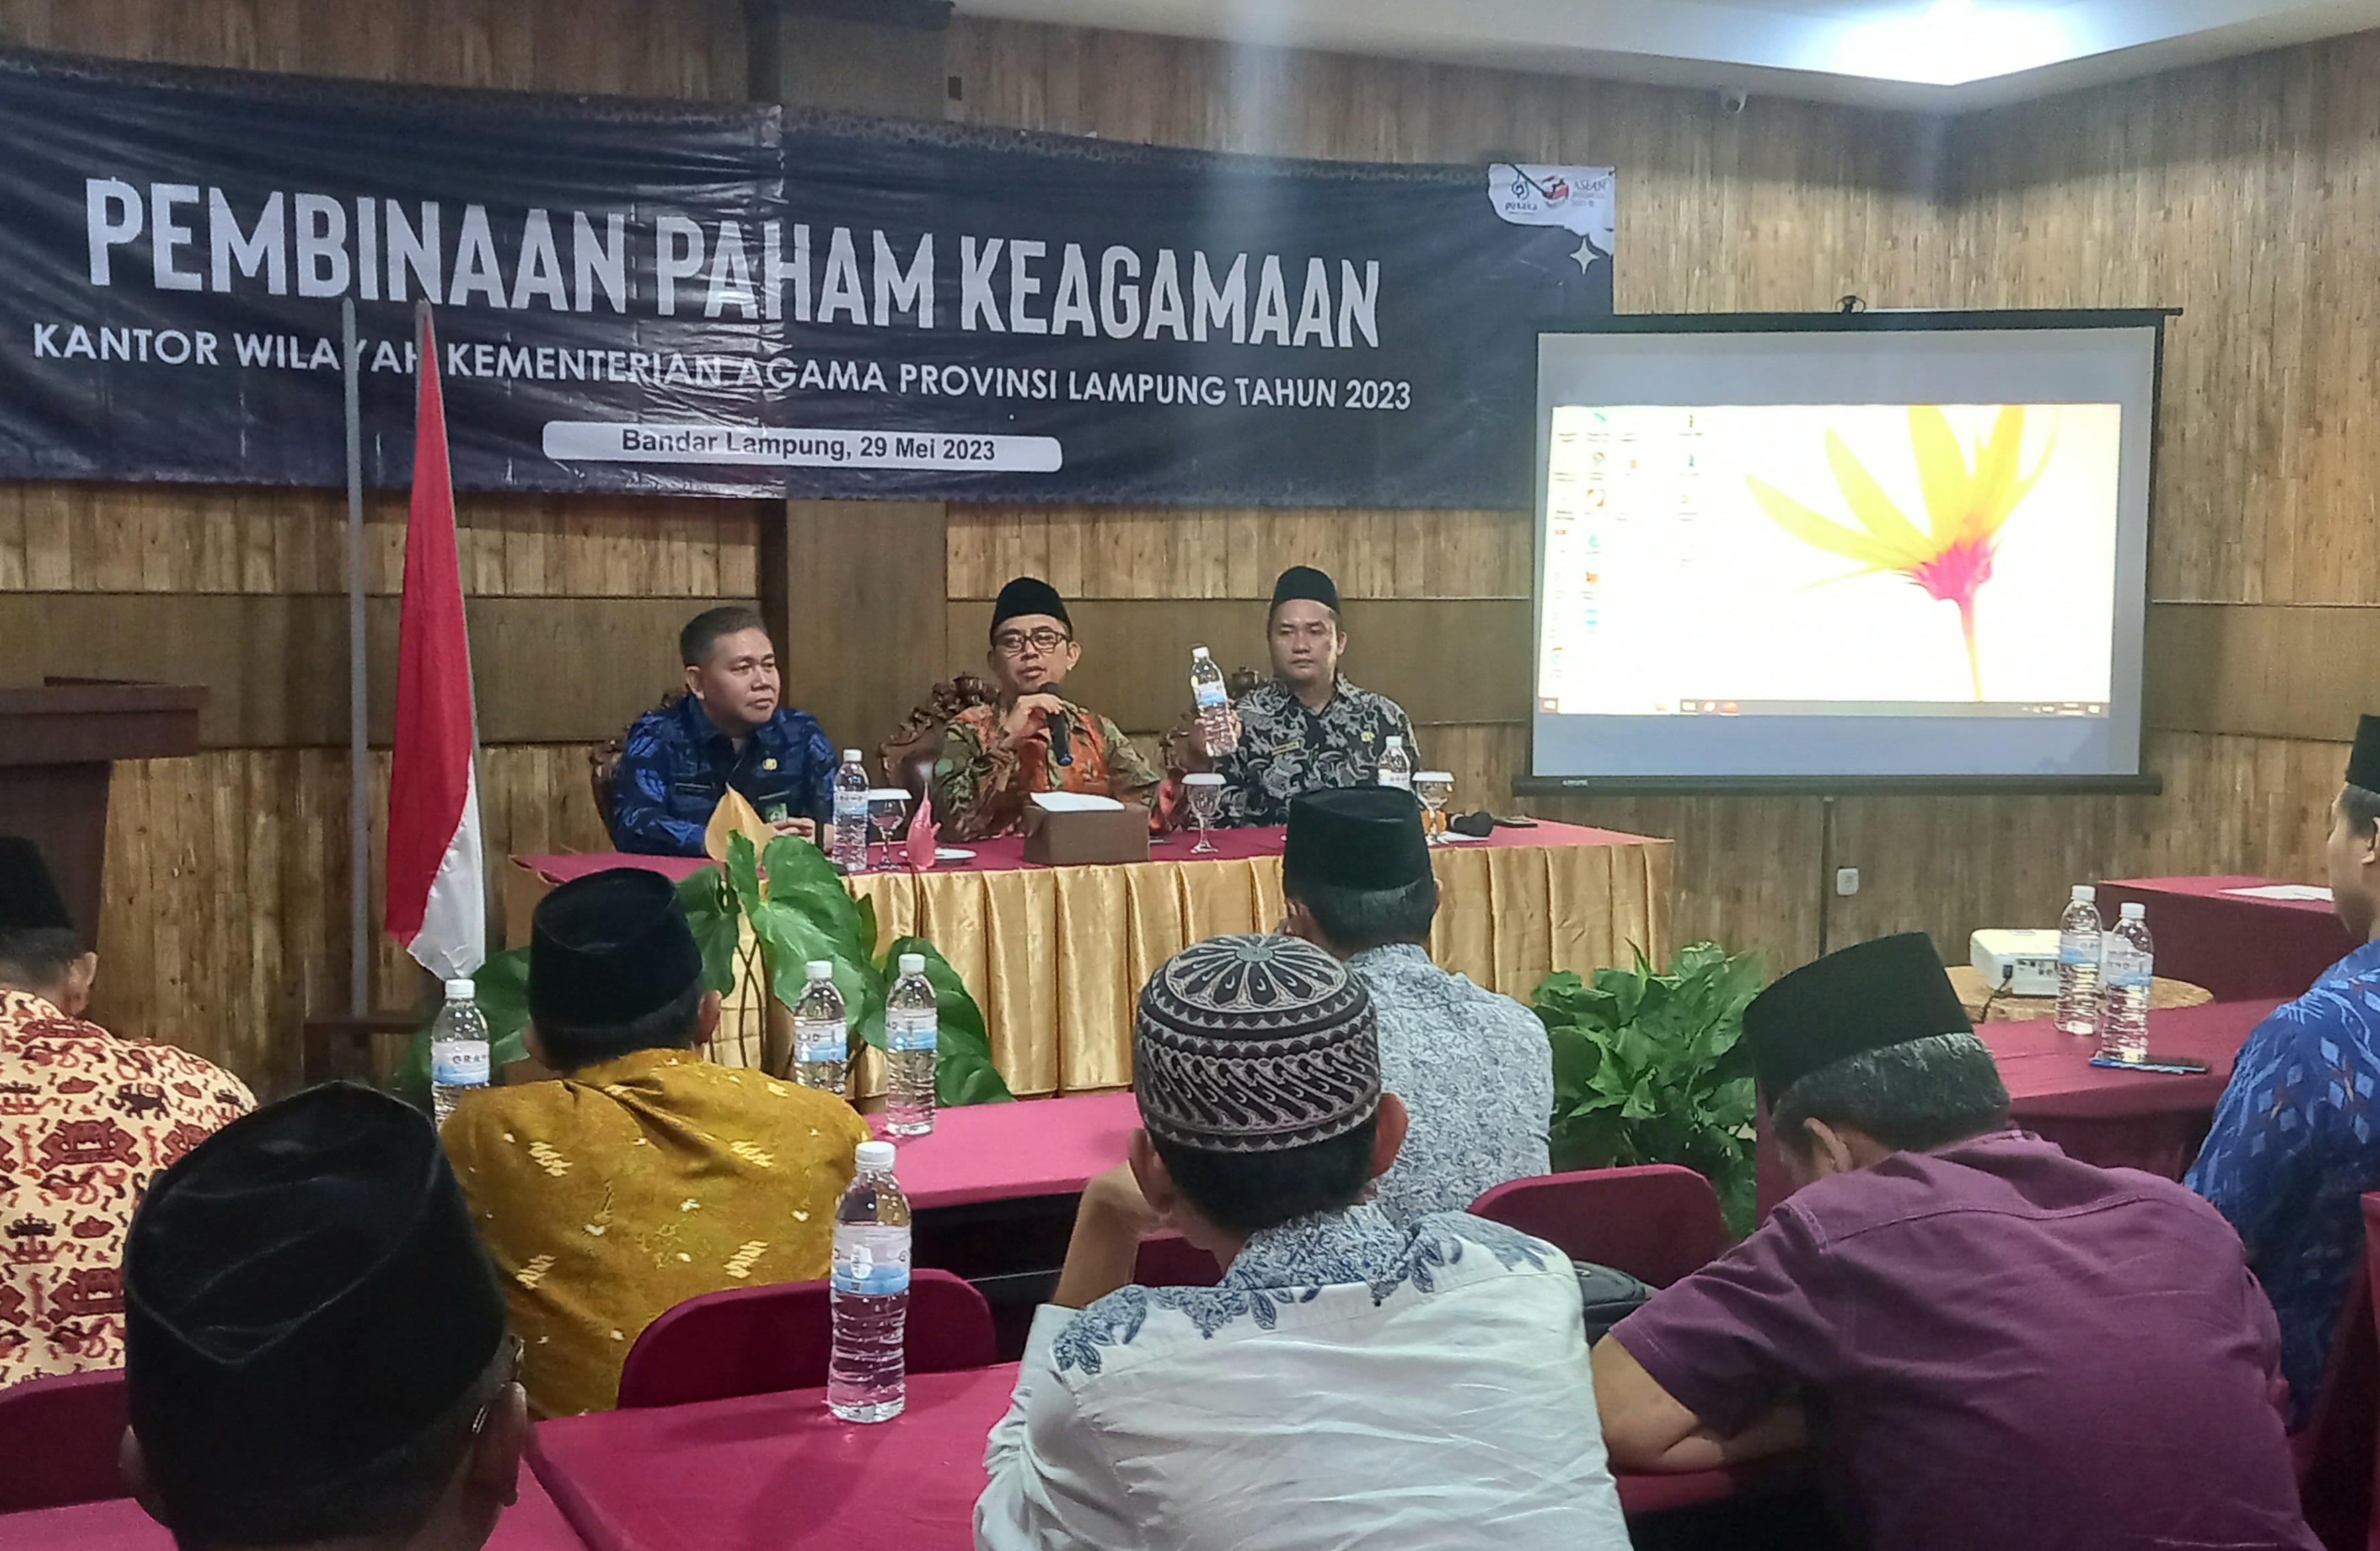 Kemenag Lampung: Waspadai Disrupsi Keagamaan di Era Digital